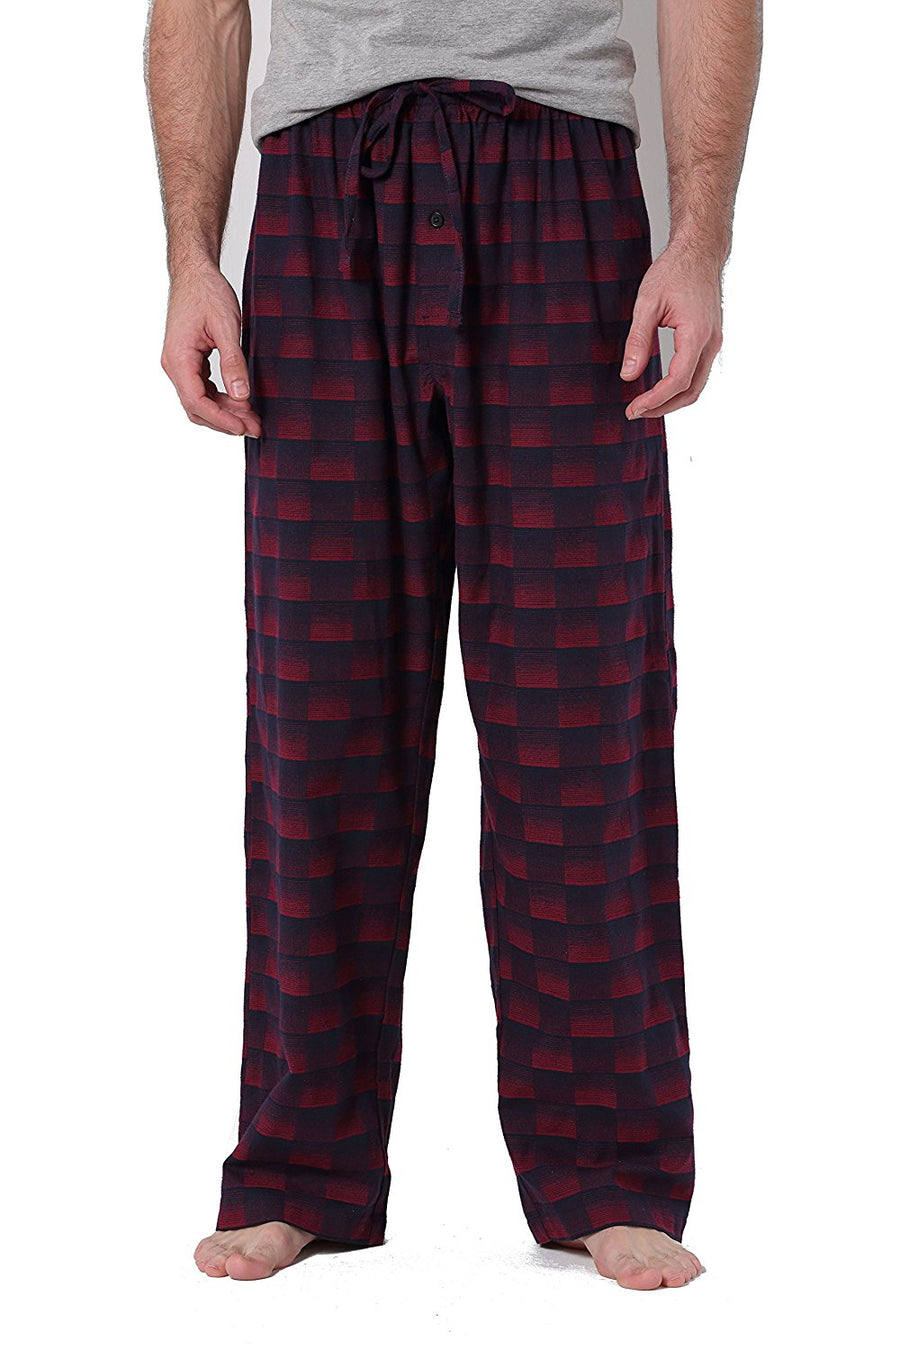 YUSHOW Mens Flannel Pajamas Set Cotton Plaid Pjs Button Down Warm